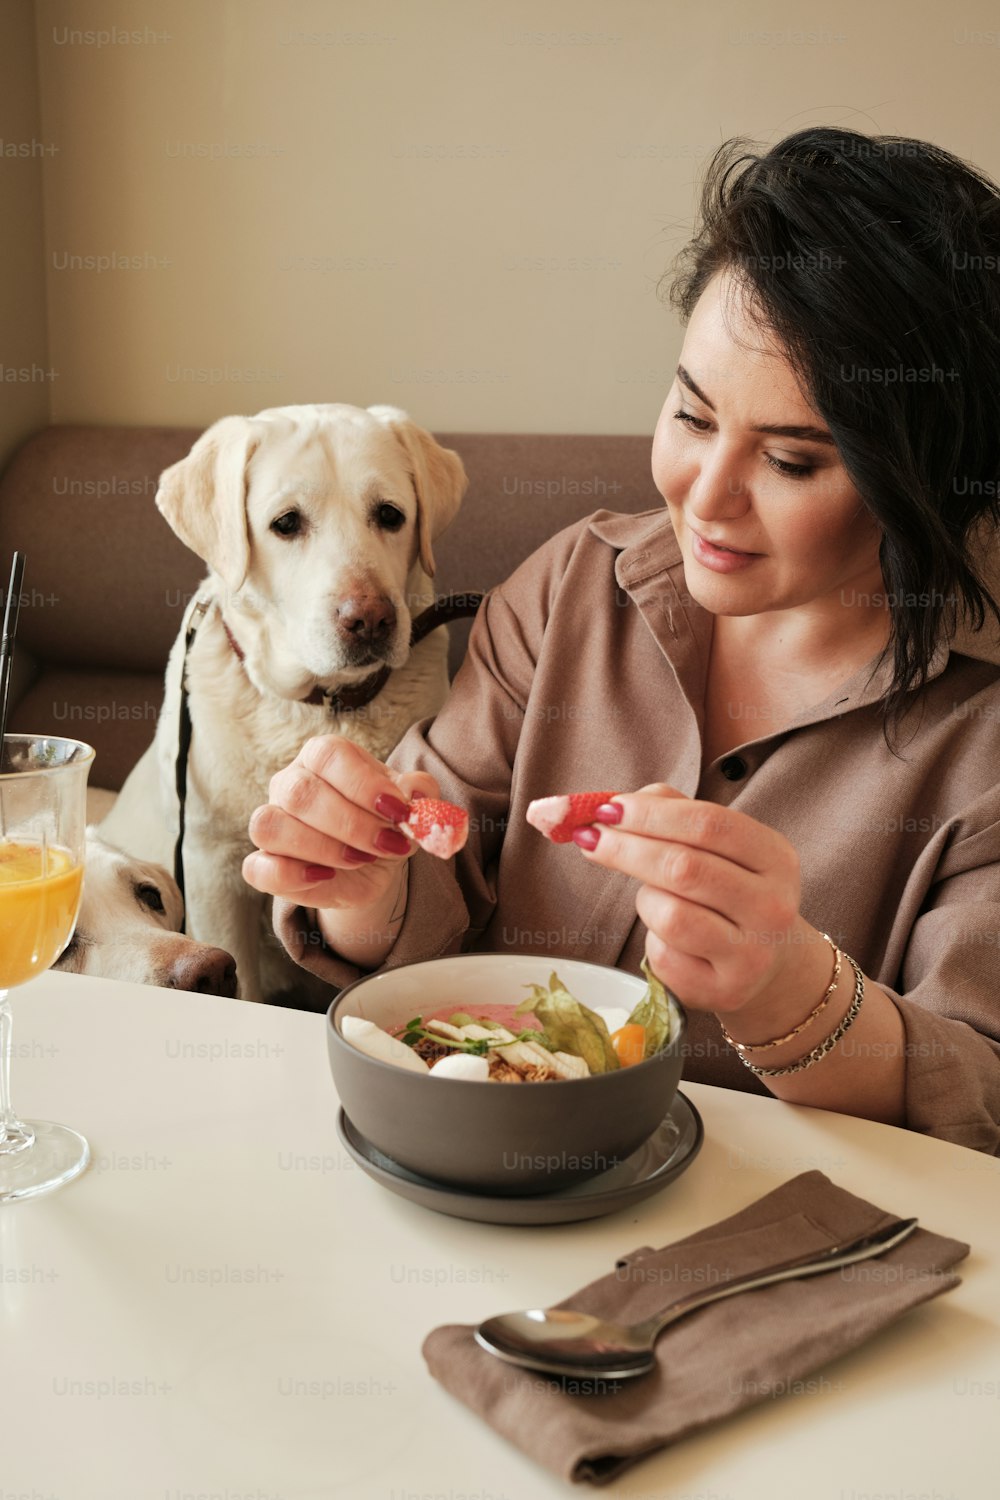 食べ物のボウルと犬と一緒にテーブルに座っている女性